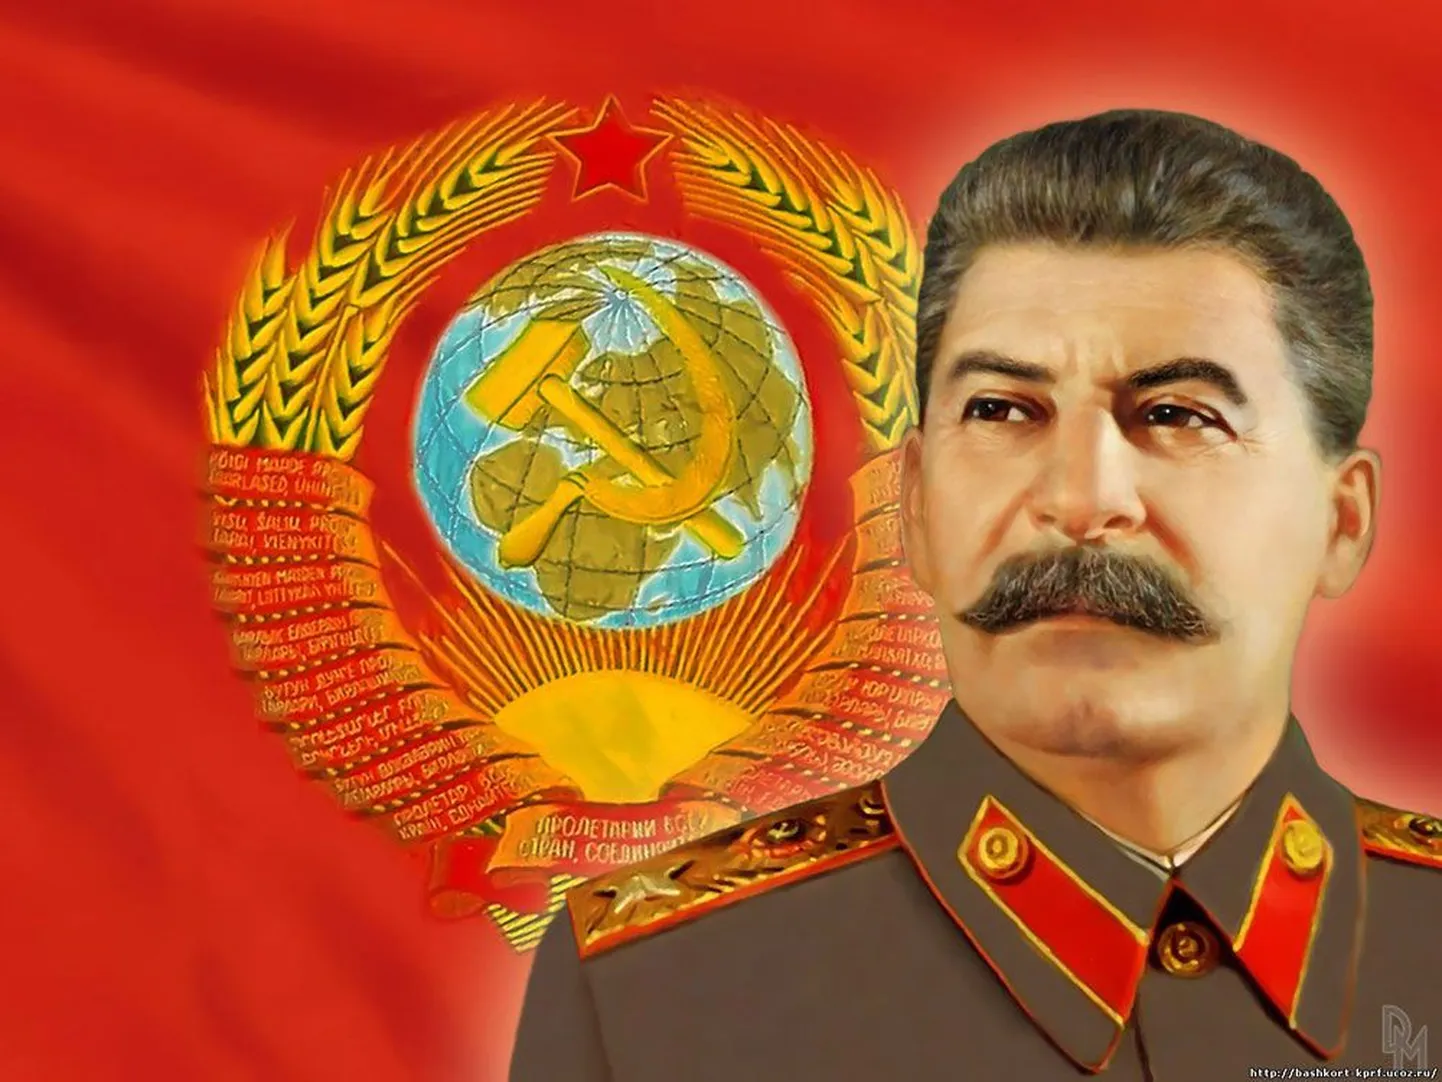 Jossif Stalin muutis oma profiilipilti. See meeldib sõbrale Joachim von Ribbentrop ja 100-le kasutajale.